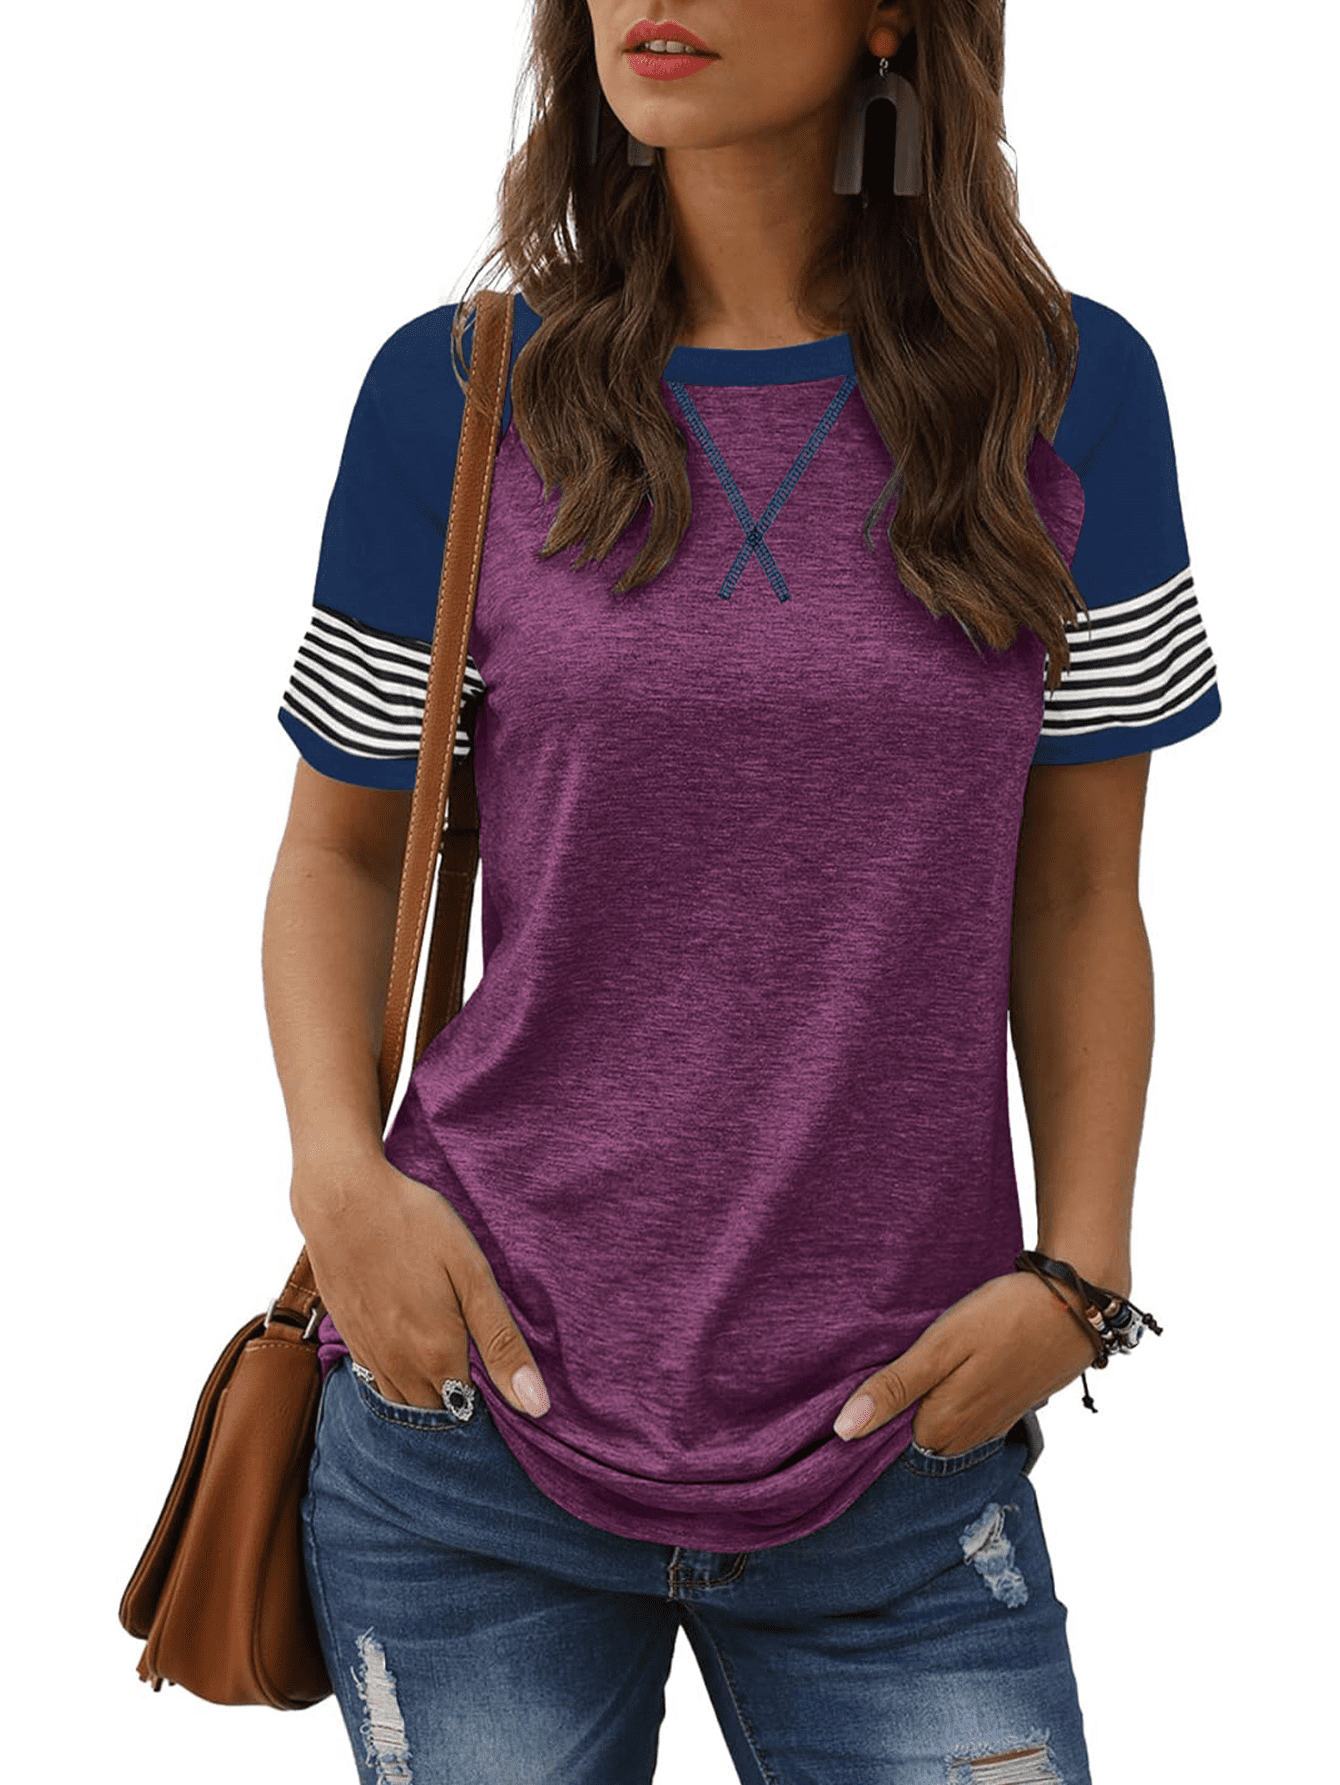 KAREN SCOTT SPORT Womens Blue Striped 3/4 Sleeve Jewel Neck T-Shirt L